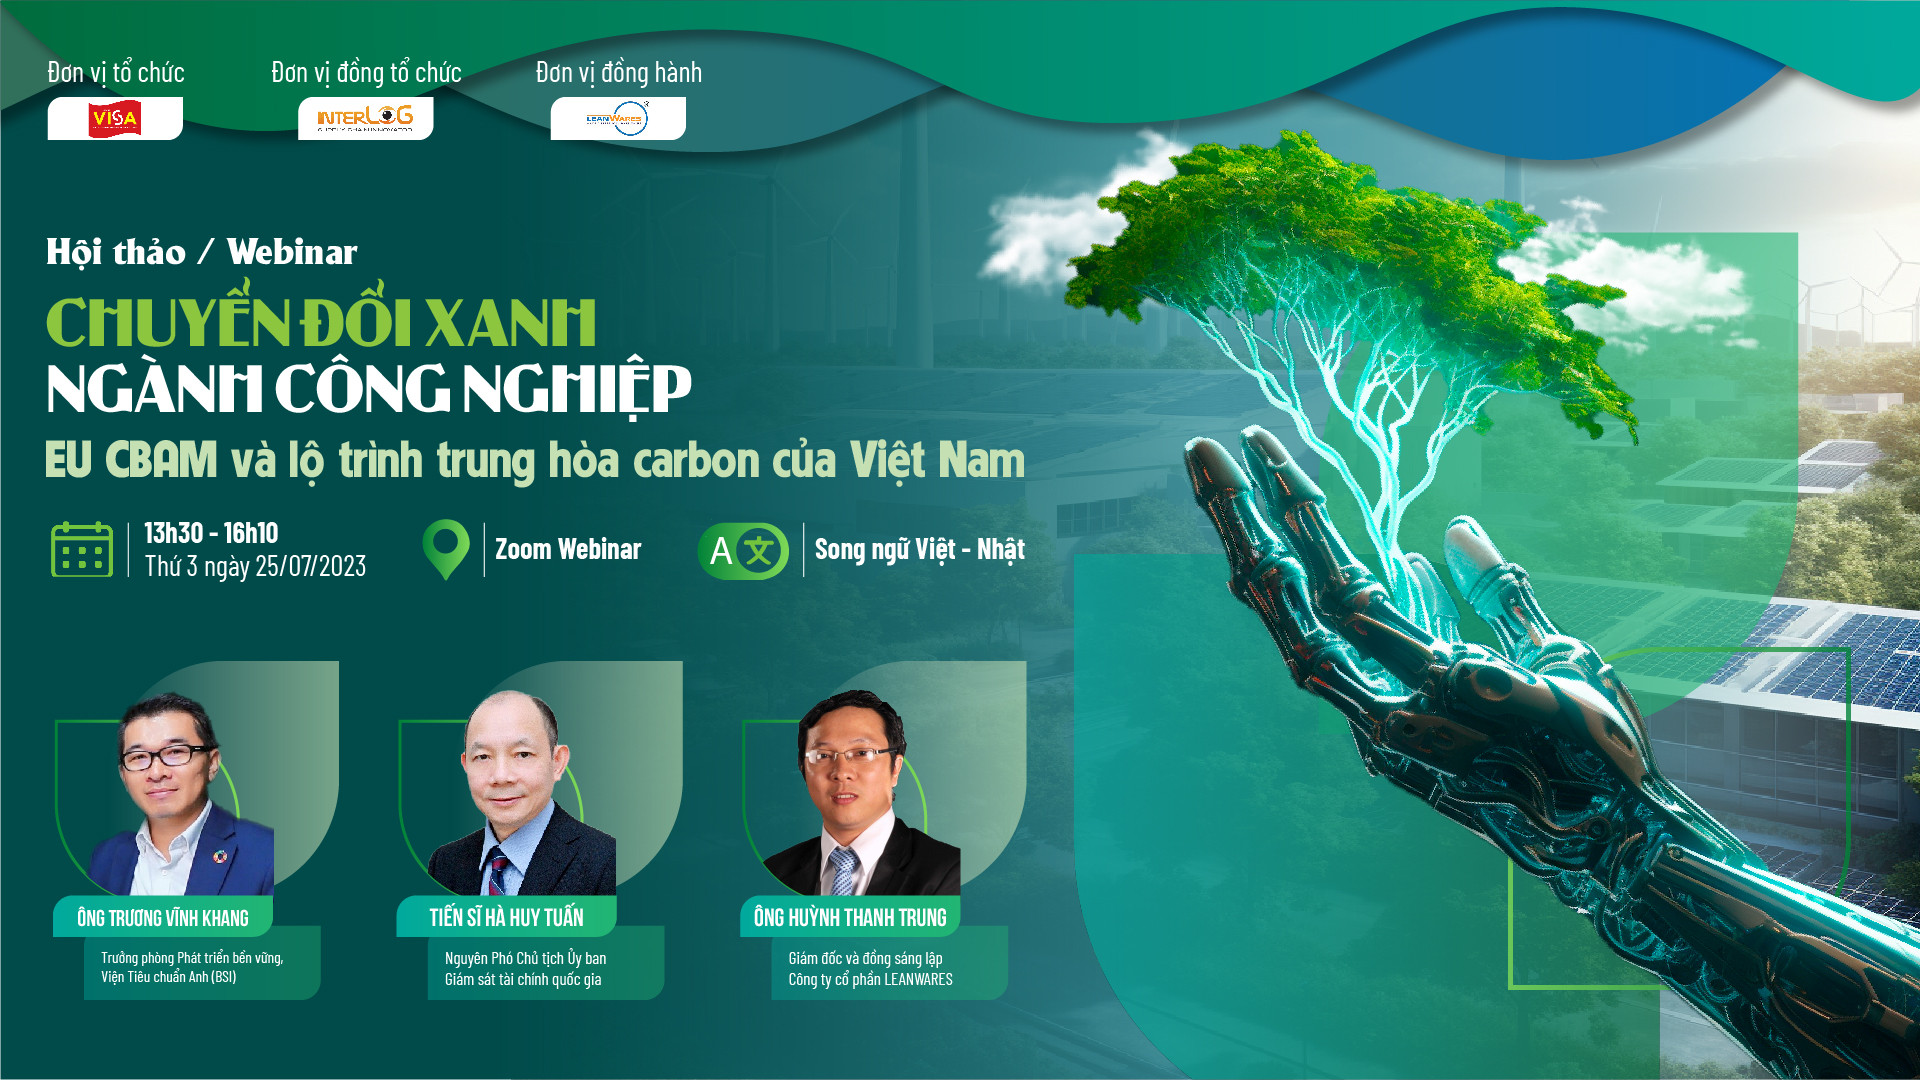 Hội thảo "Chuyển đổi xanh ngành công nghiệp – EU CBAM và lộ trình trung hòa carbon của Việt Nam"